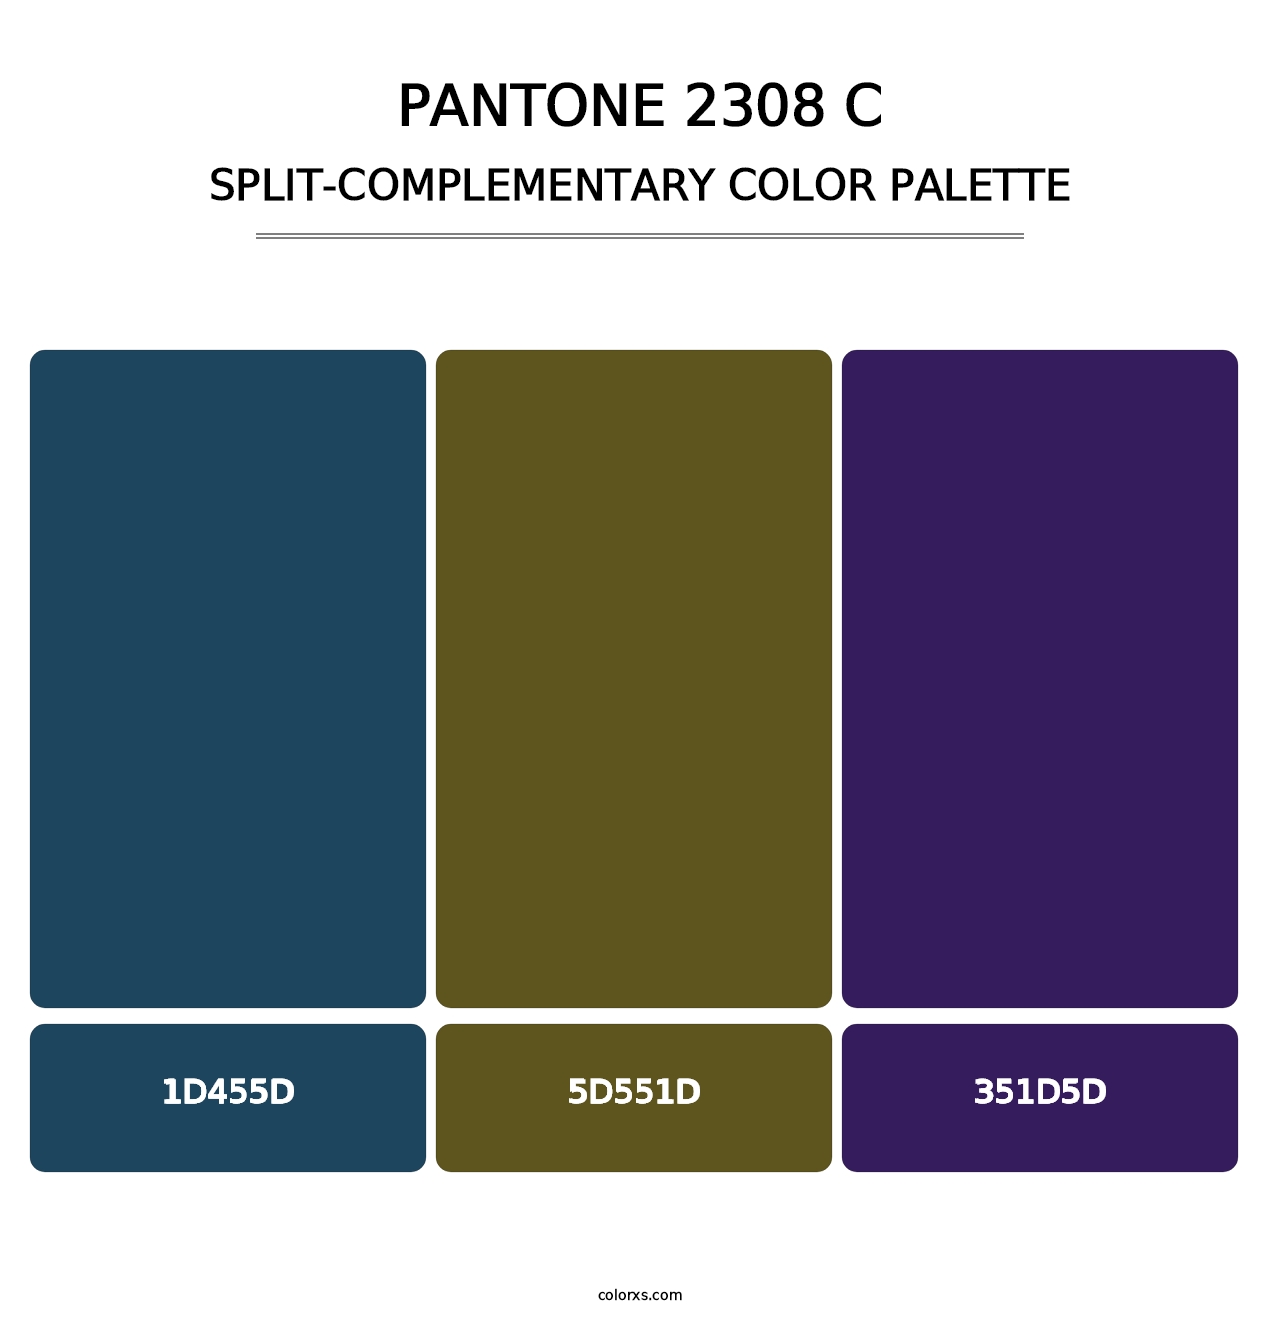 PANTONE 2308 C - Split-Complementary Color Palette